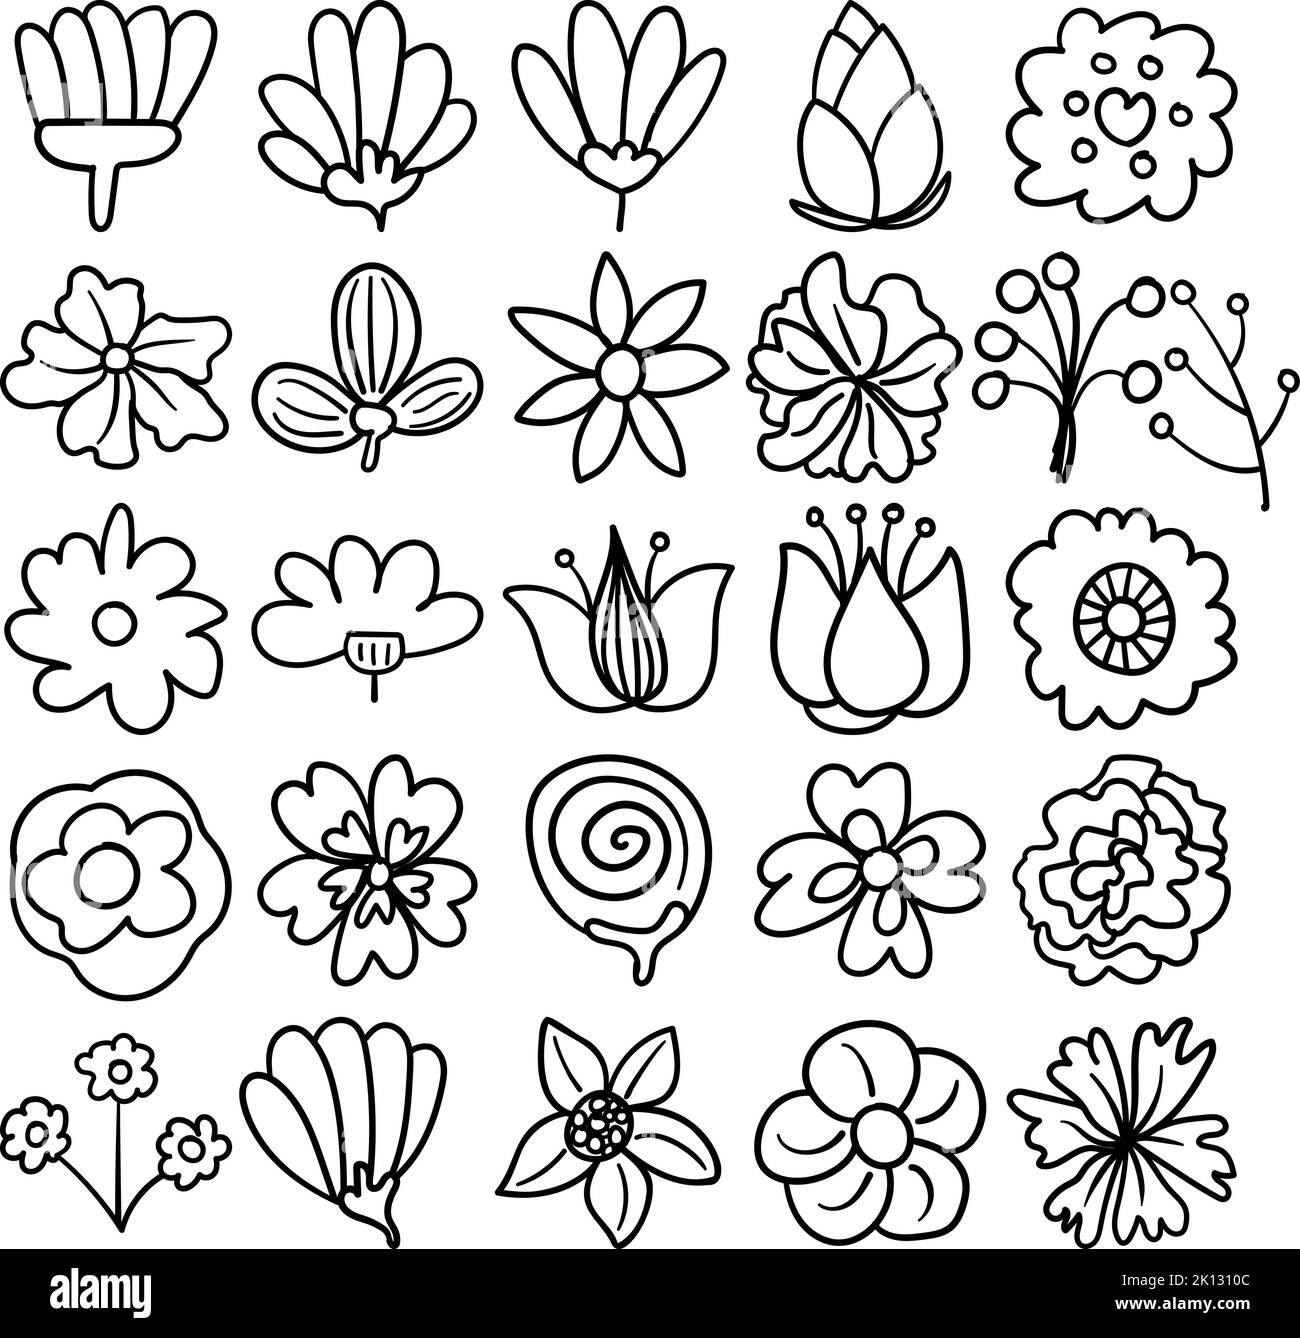 Blumen Handgezeichnete Doodle Line Art Outline Set mit Blumen, Blumen, Blüten, Flora, Blüte, Baby Zahn, Kraut, mehrjährig, Rebe, jährlich, Knospe Stock Vektor